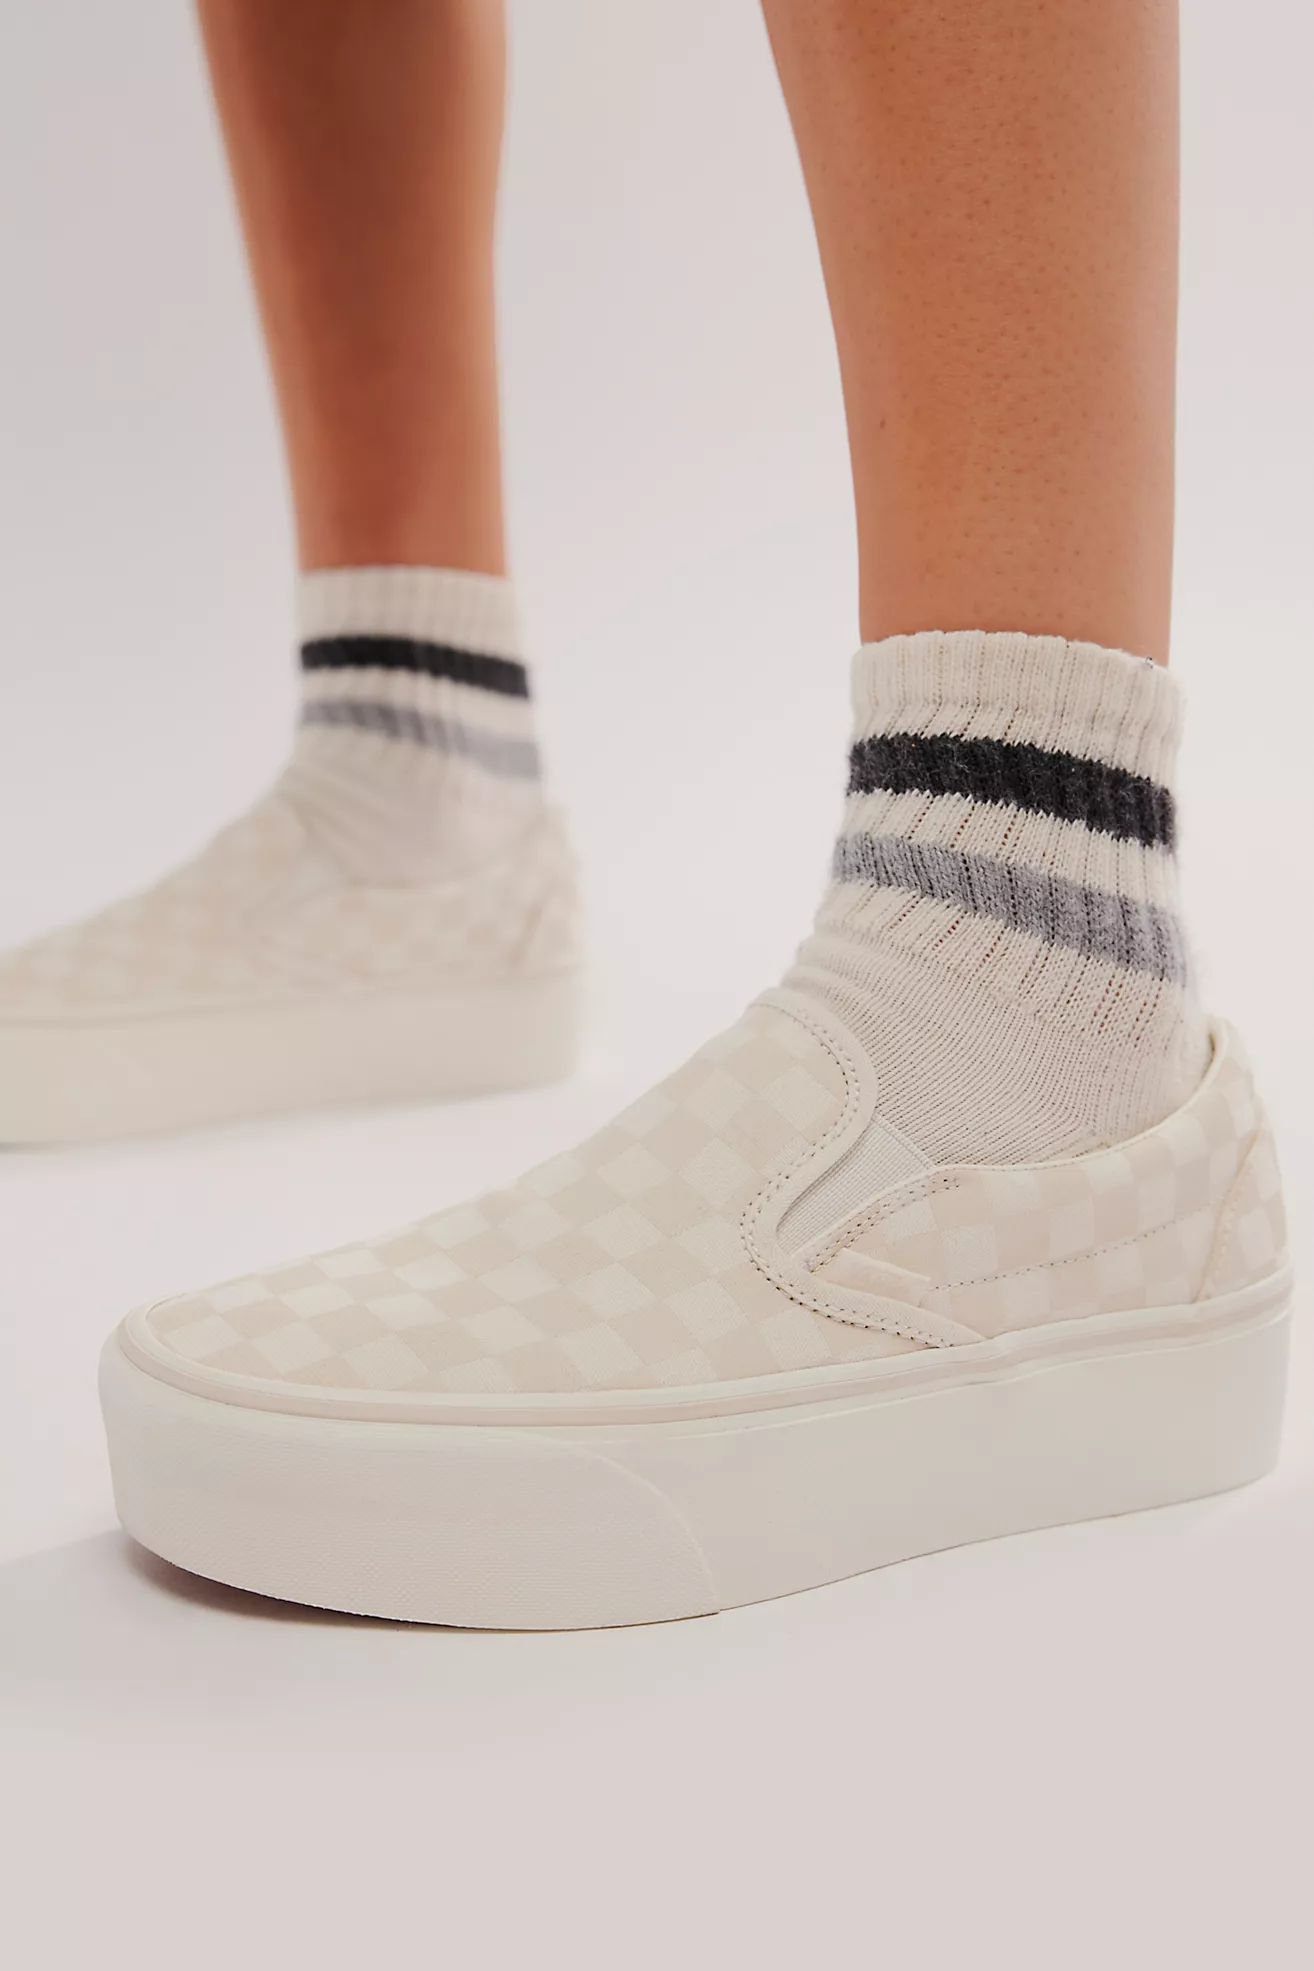 Vans Checkered Slip-on Stackform Sneakers | Free People (Global - UK&FR Excluded)